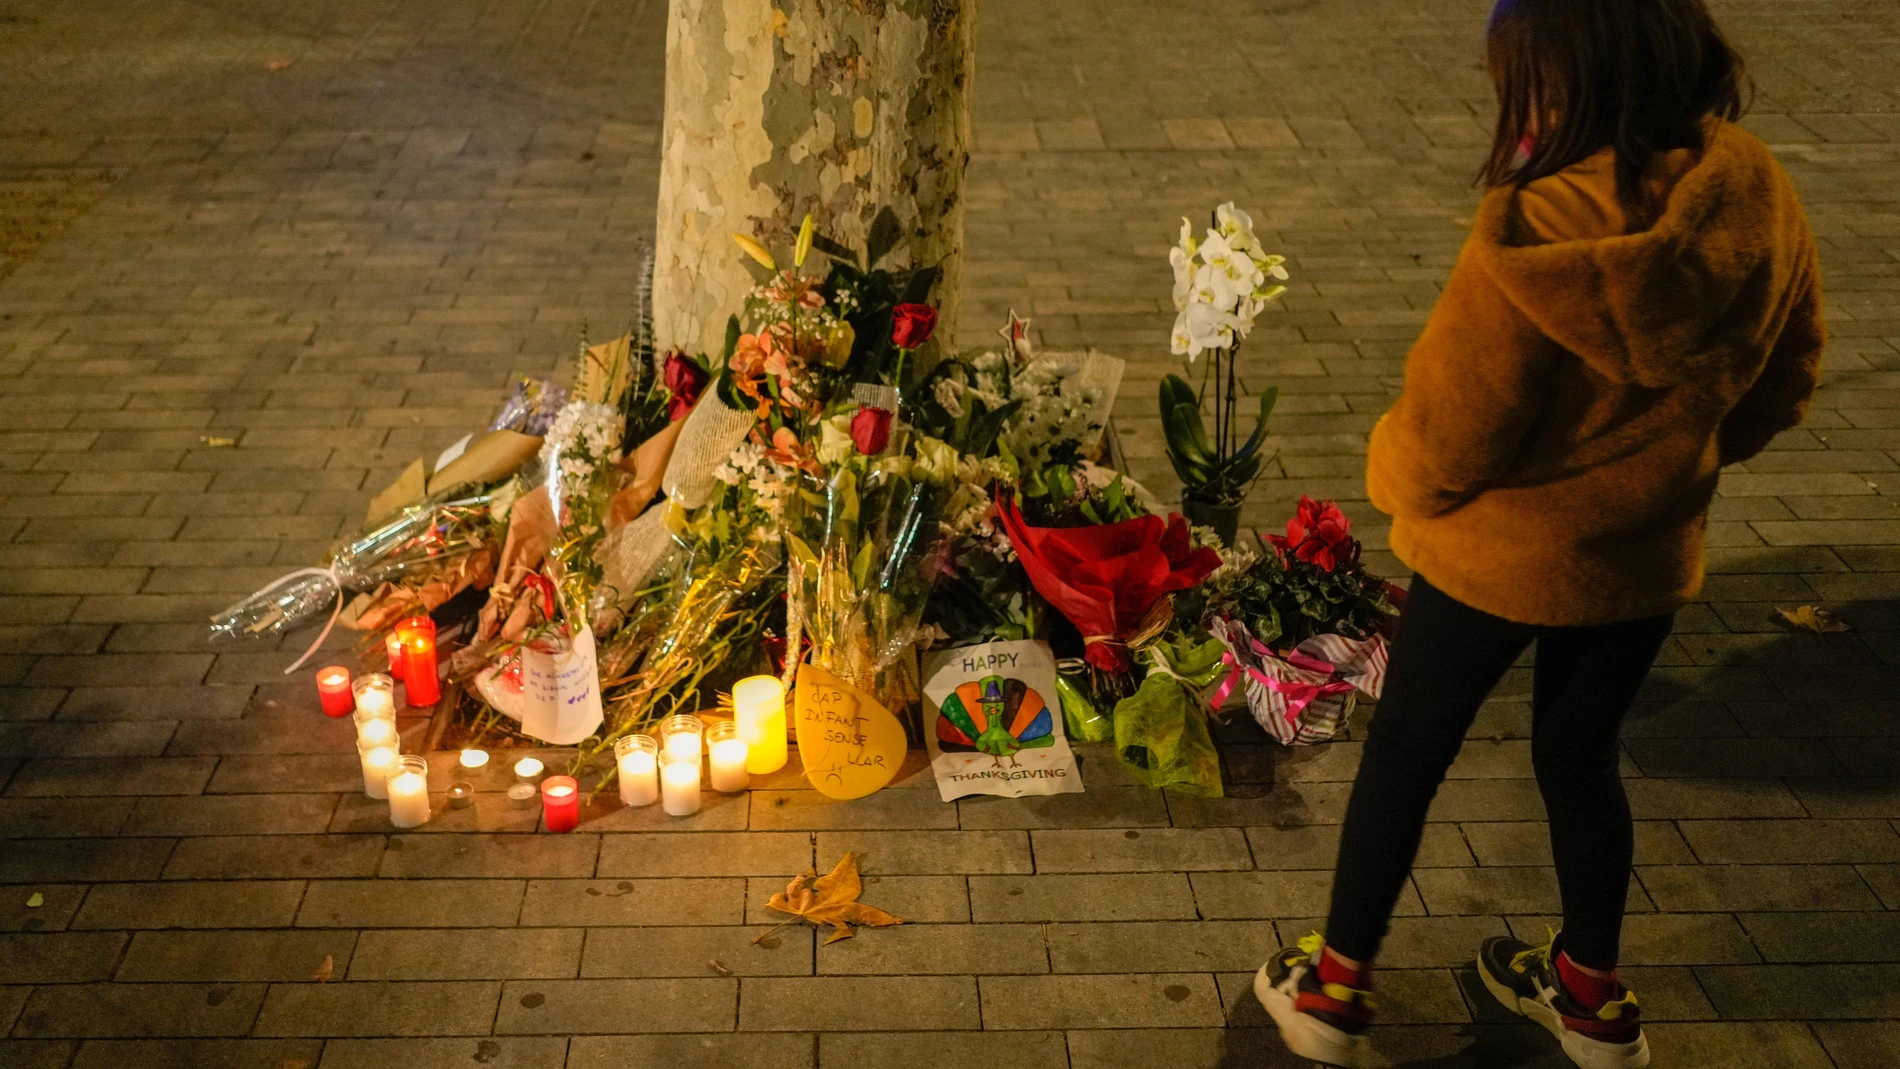 Flores y velas en memoria por las personas fallecidas en el incendio ocurrido en un local ocupado en la Plaza Tetuan de Barcelona